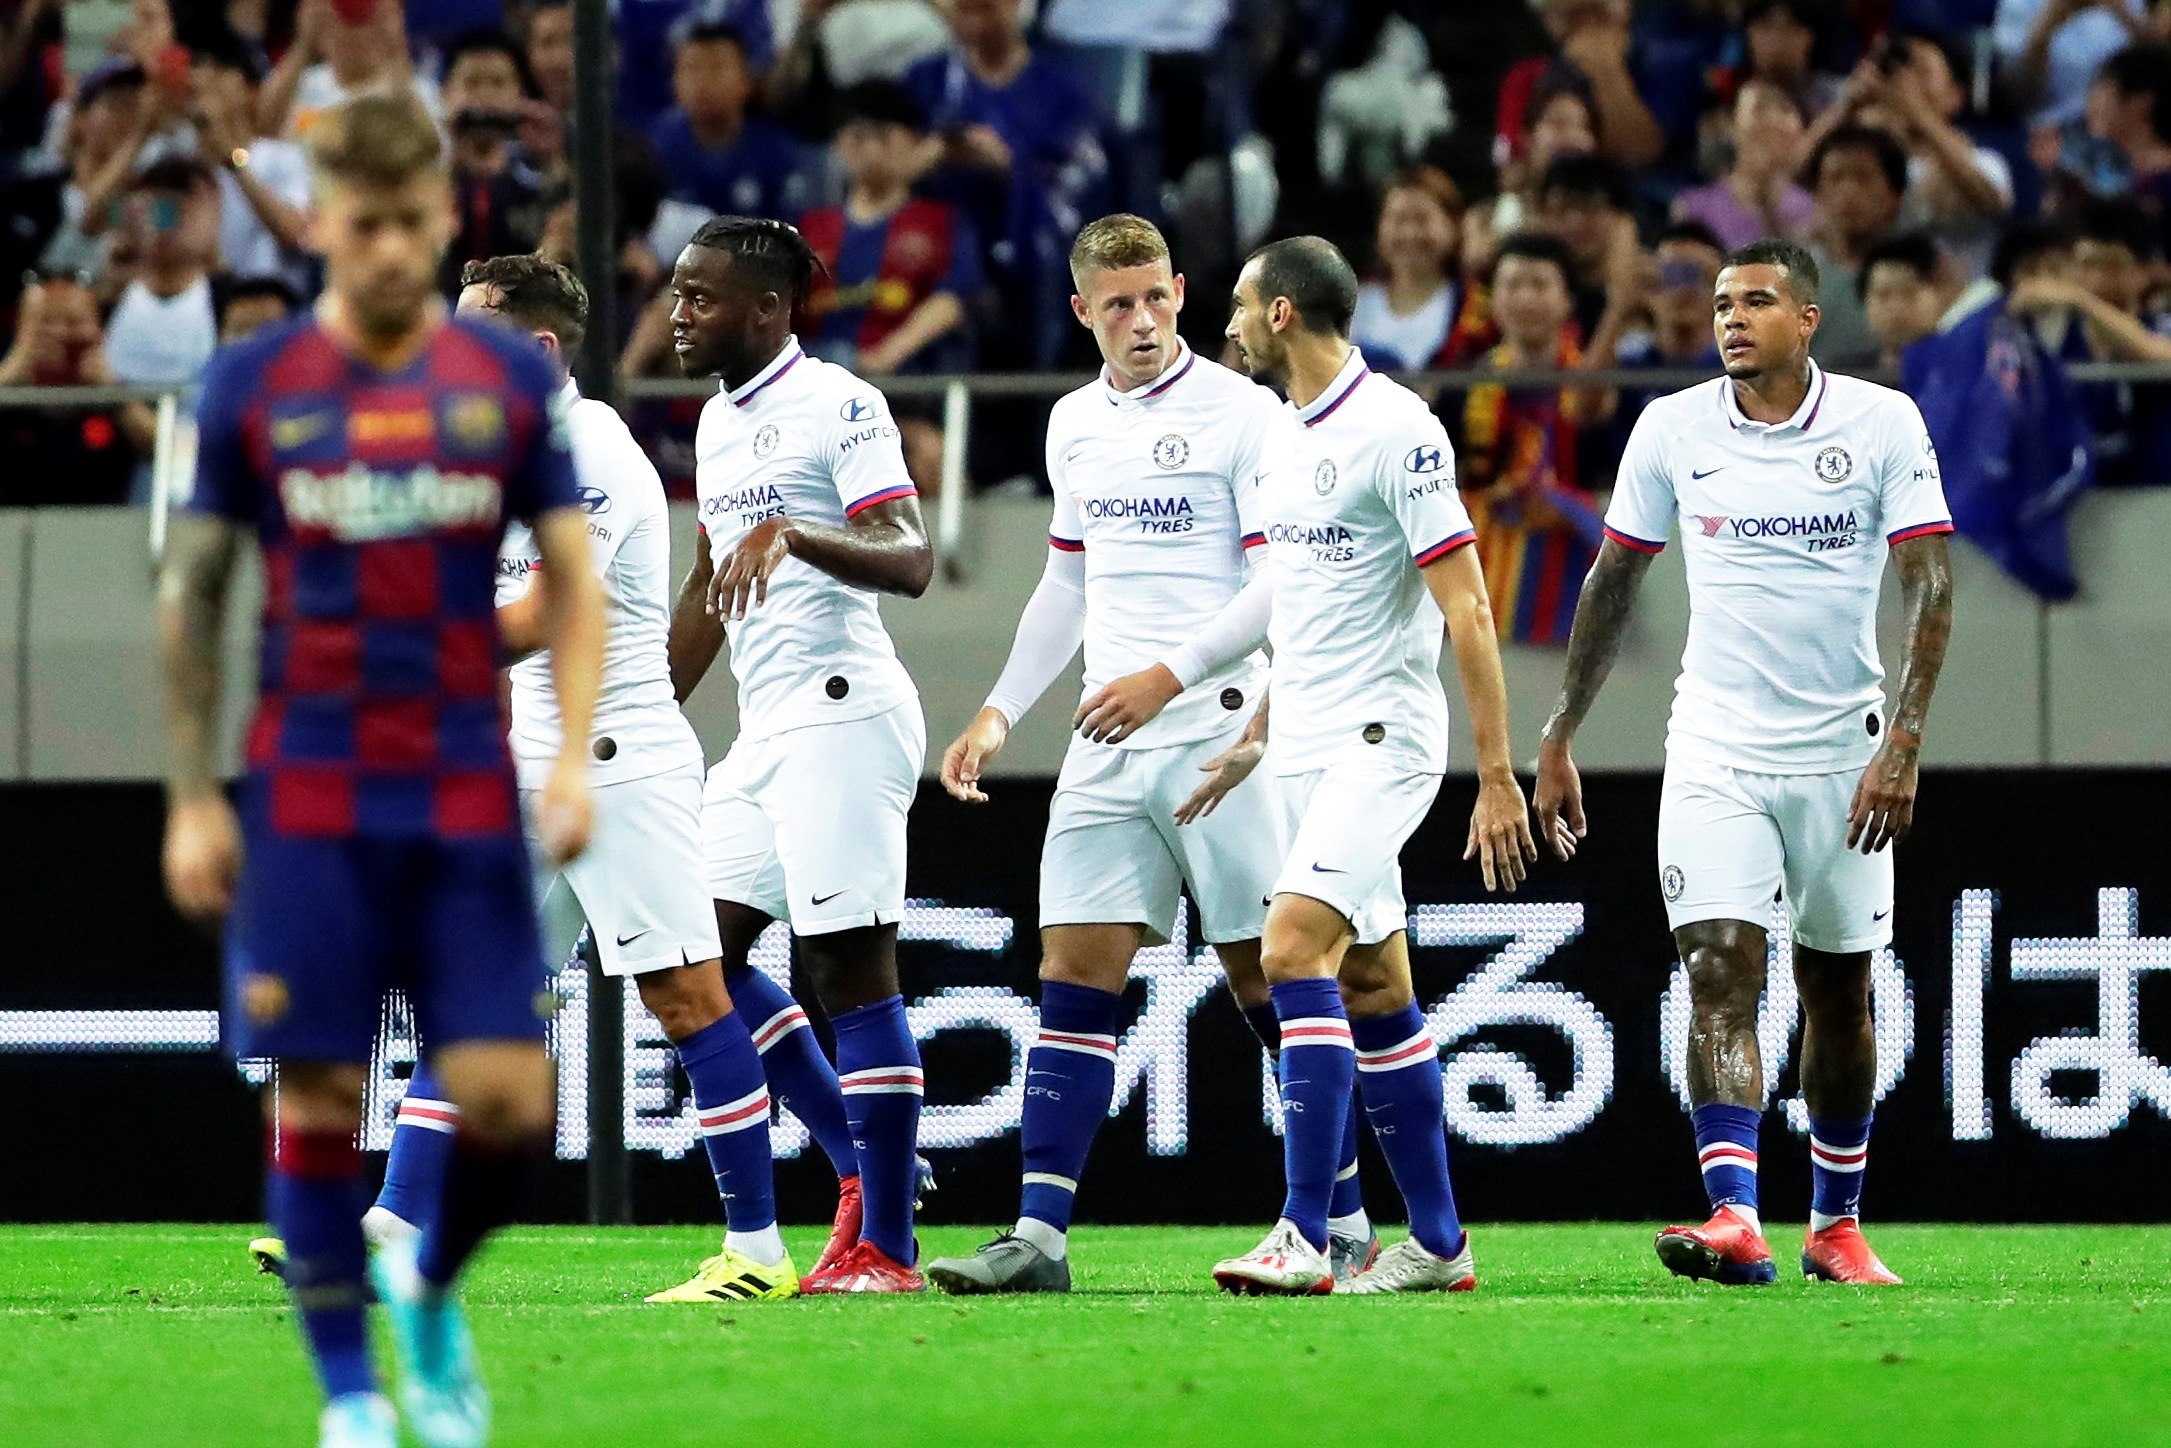 El equipo español Barcelona cae 2-1 ante el Chelsea en amistoso. (Foto Prensa Libre: EFE) 